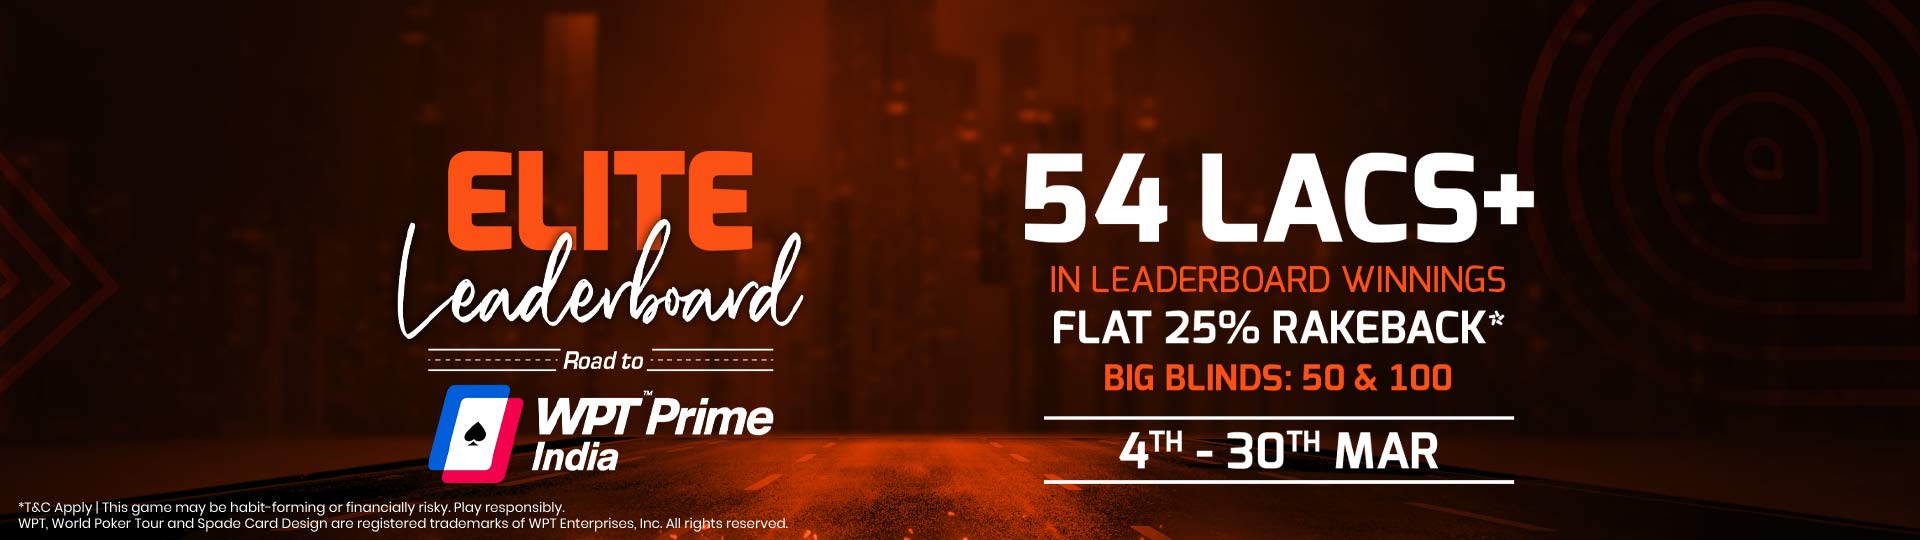 Adda52|Online|Poker|Elite Leaderboards |March